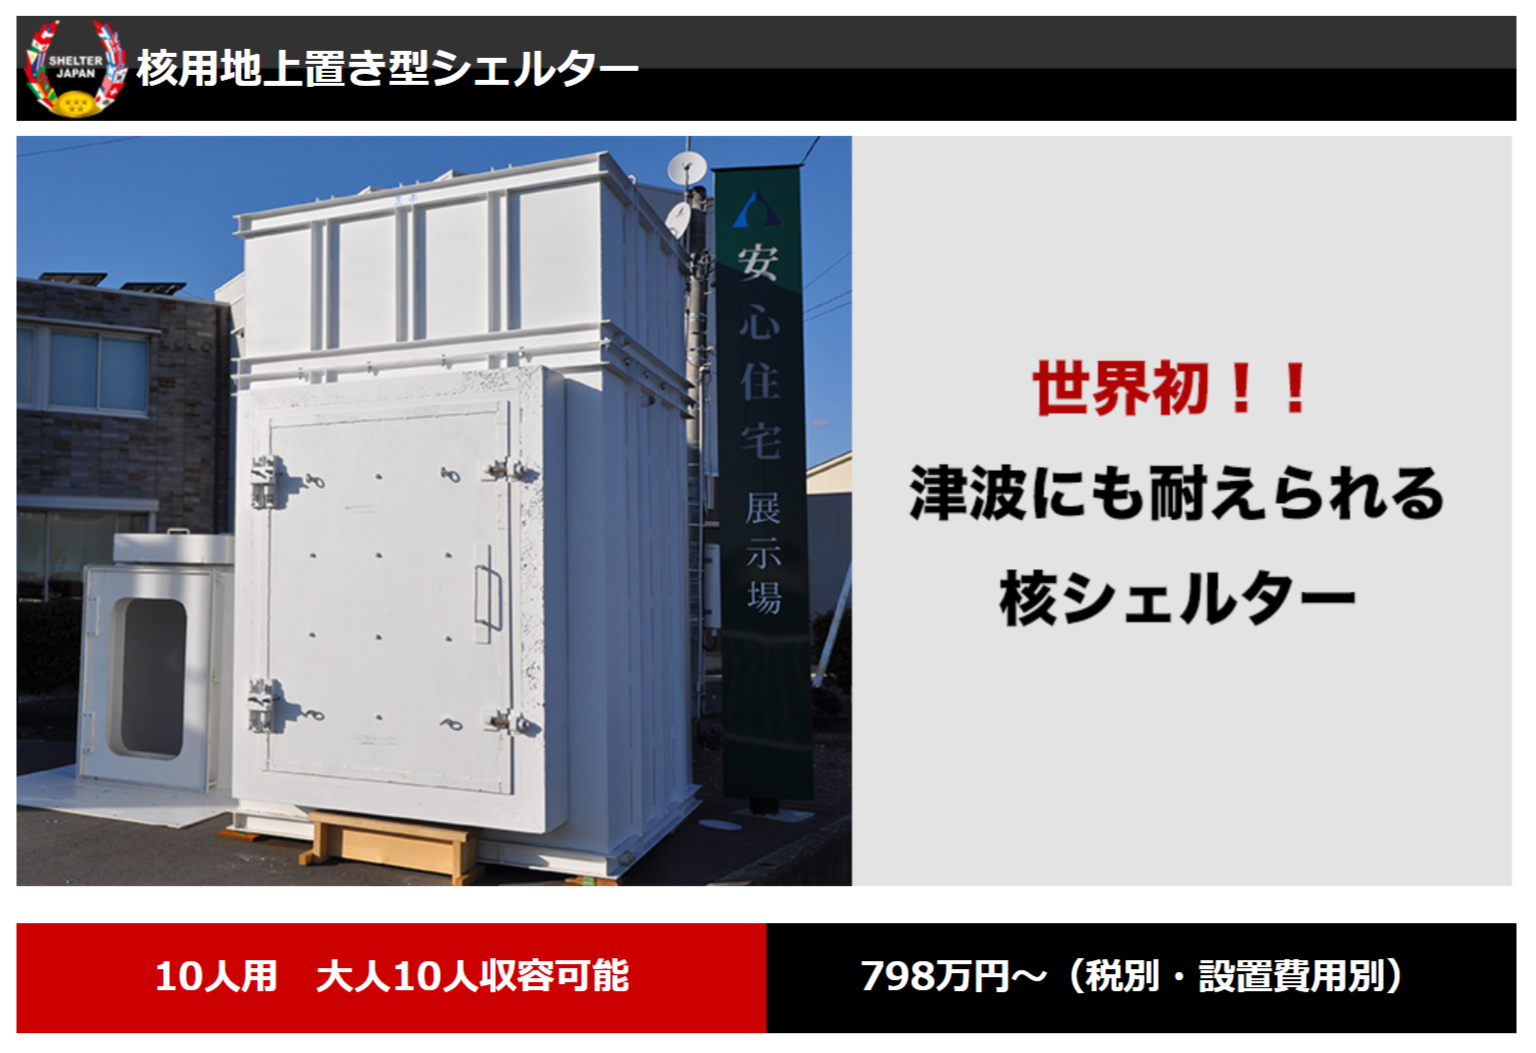 シェルタージャパンの「核用地上置き型シェルター」の画像